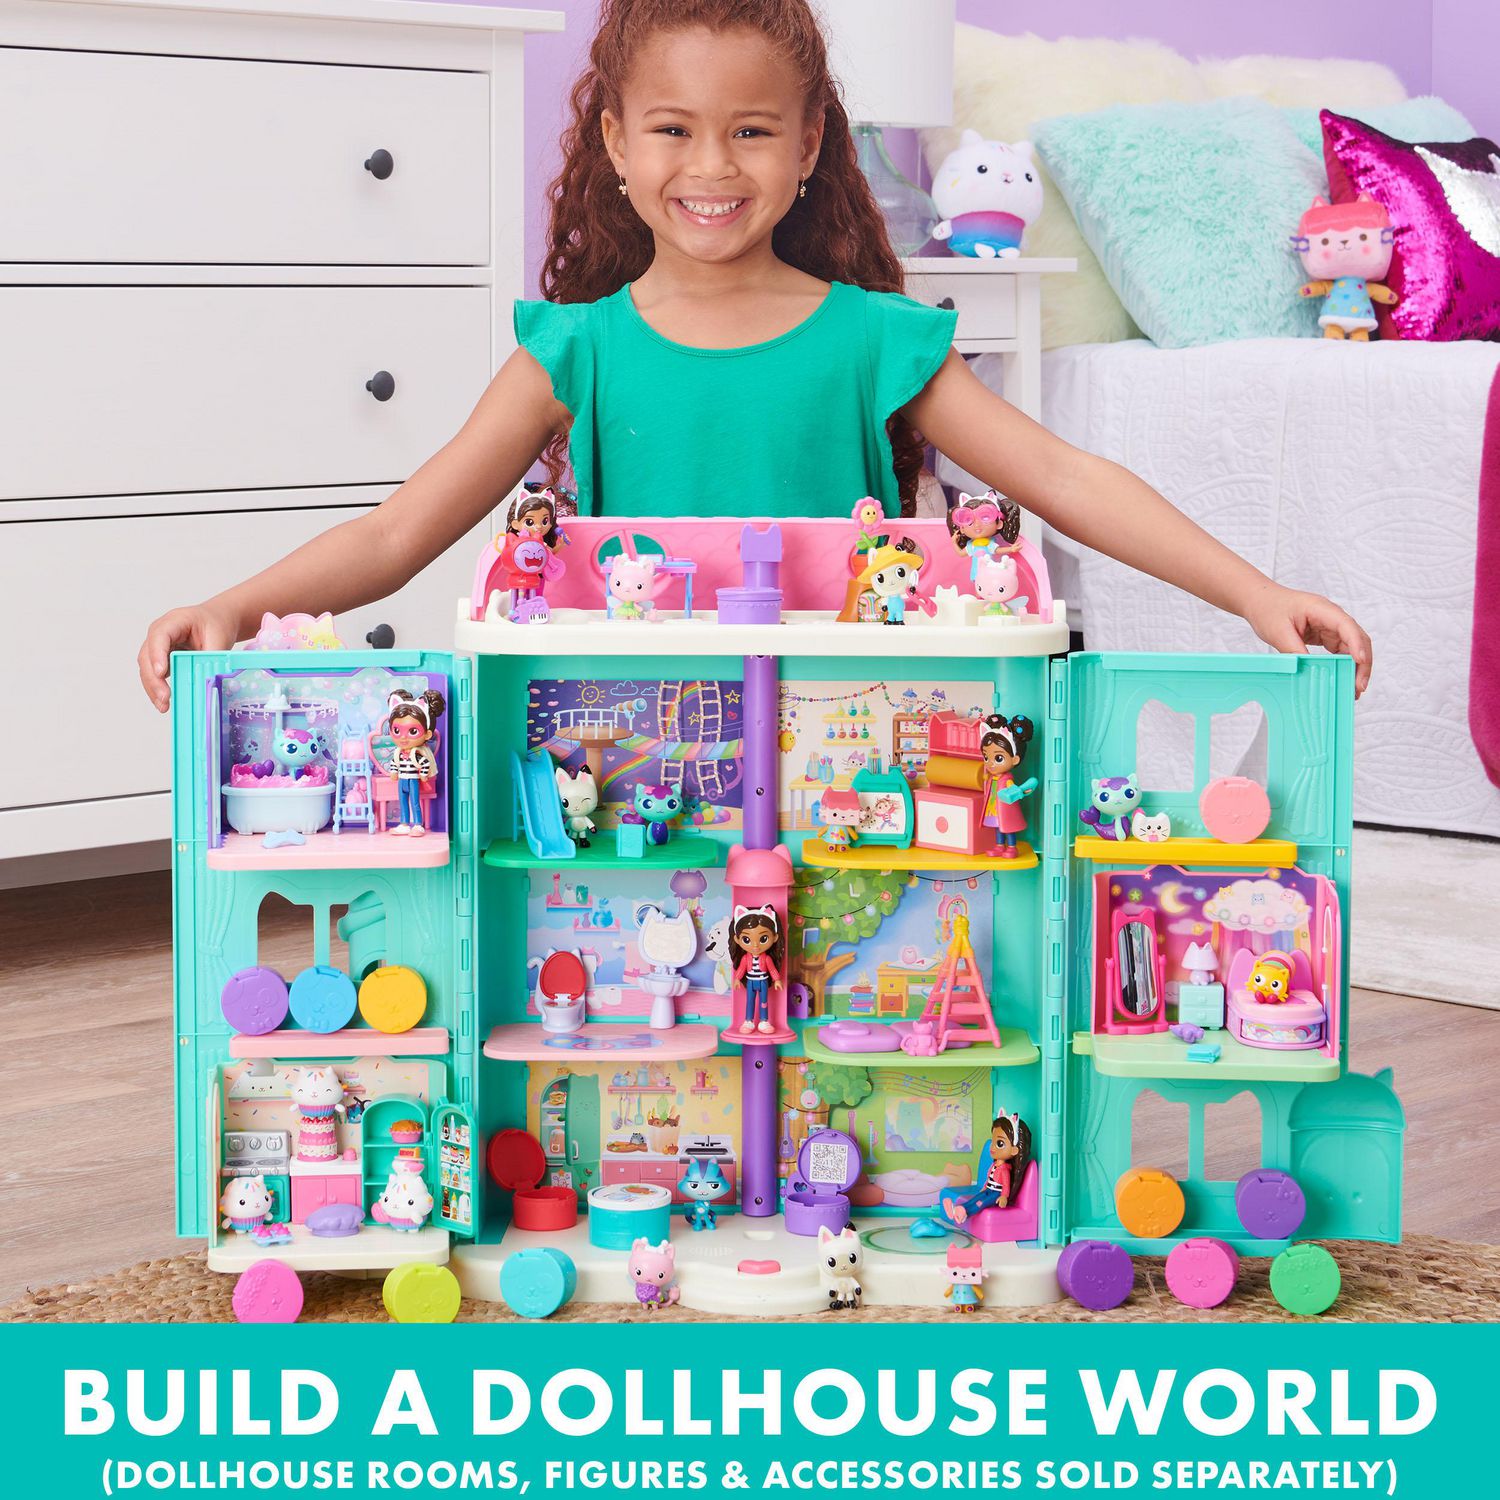 Gabby's Dollhouse, Salle de jeux Carlita Purr-ific avec figurine  Chabriolette, accessoires, meubles et boîtes surprises, jouets pour enfants  à partir de 3 ans 